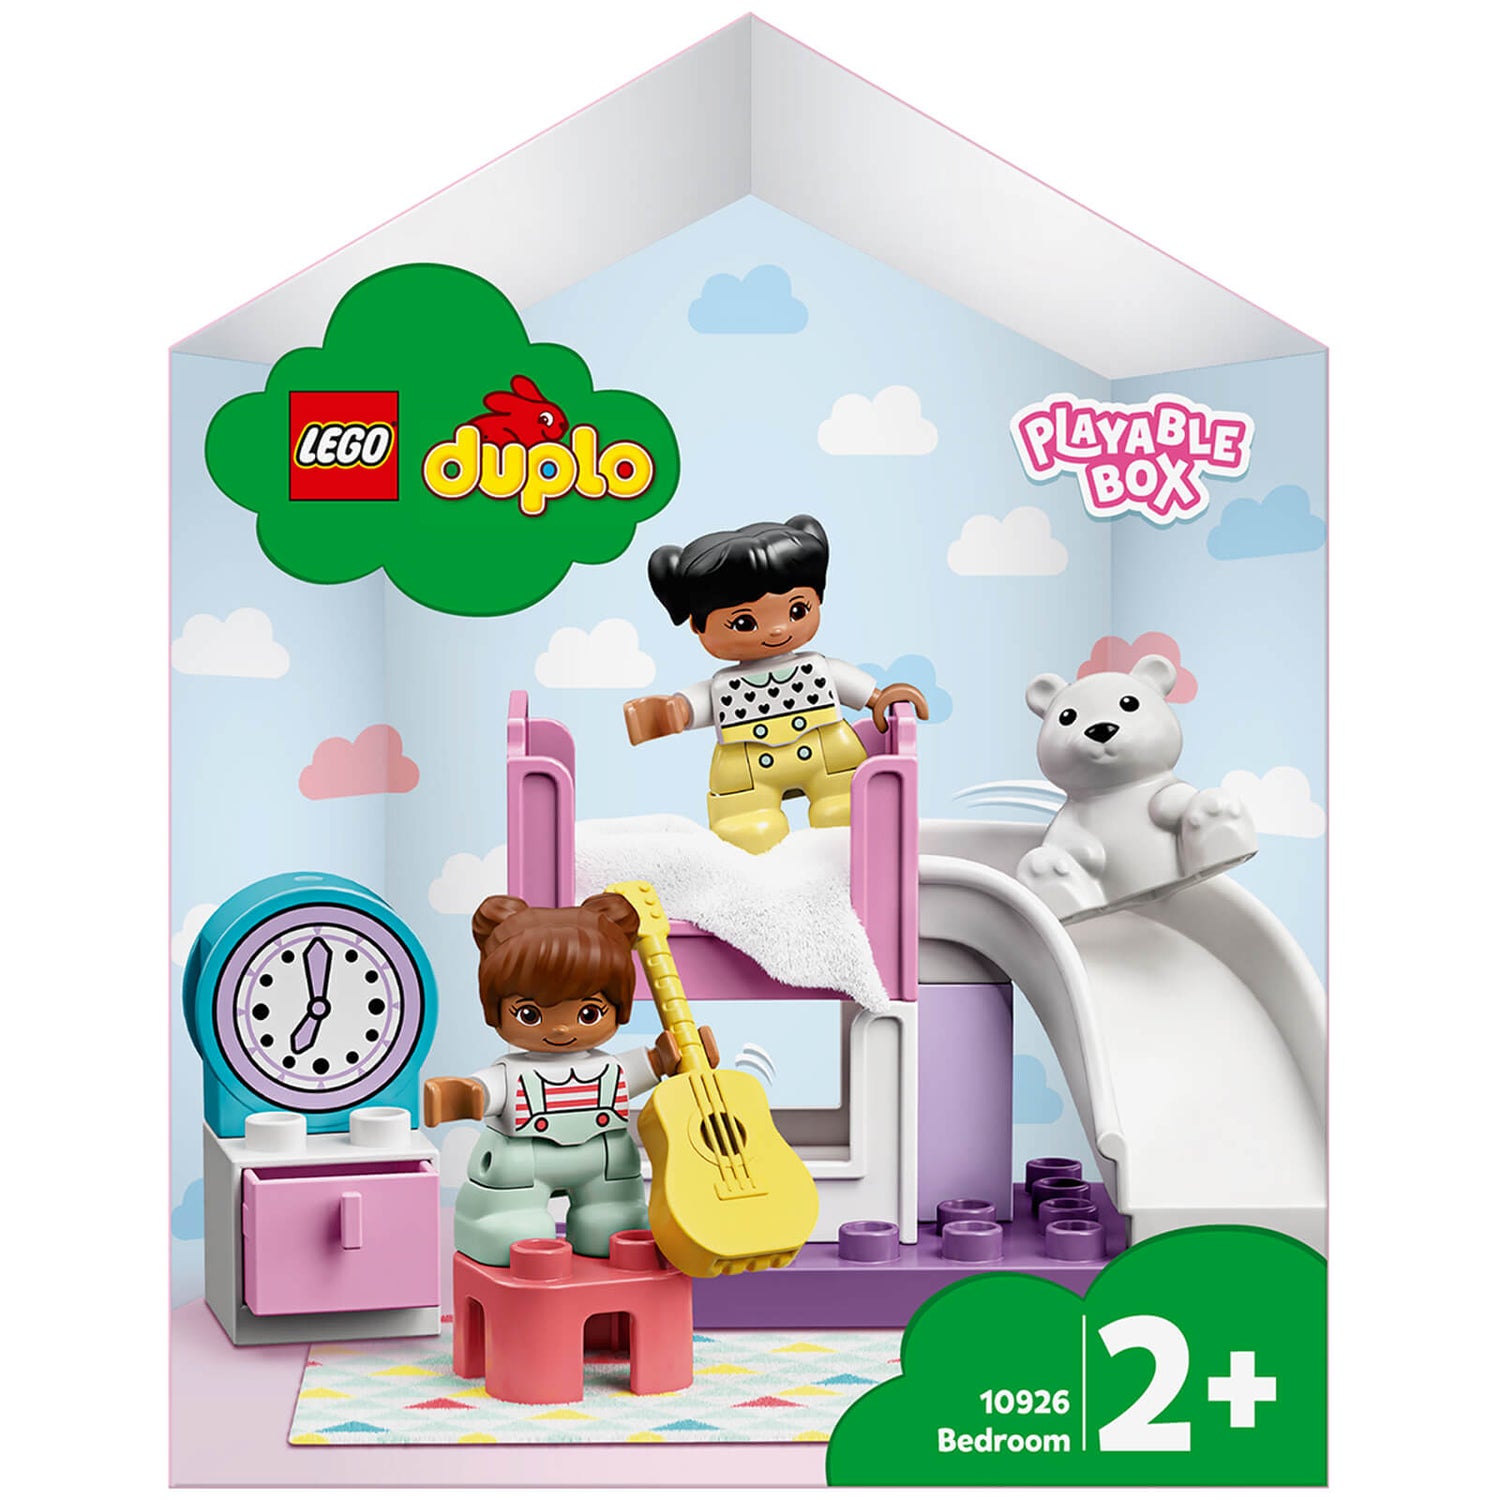 Voorspellen Opschudding Flipper LEGO DUPLO Stad: Slaapkamer speelbaar poppenhuis doos (10926) | Zavvi.nl